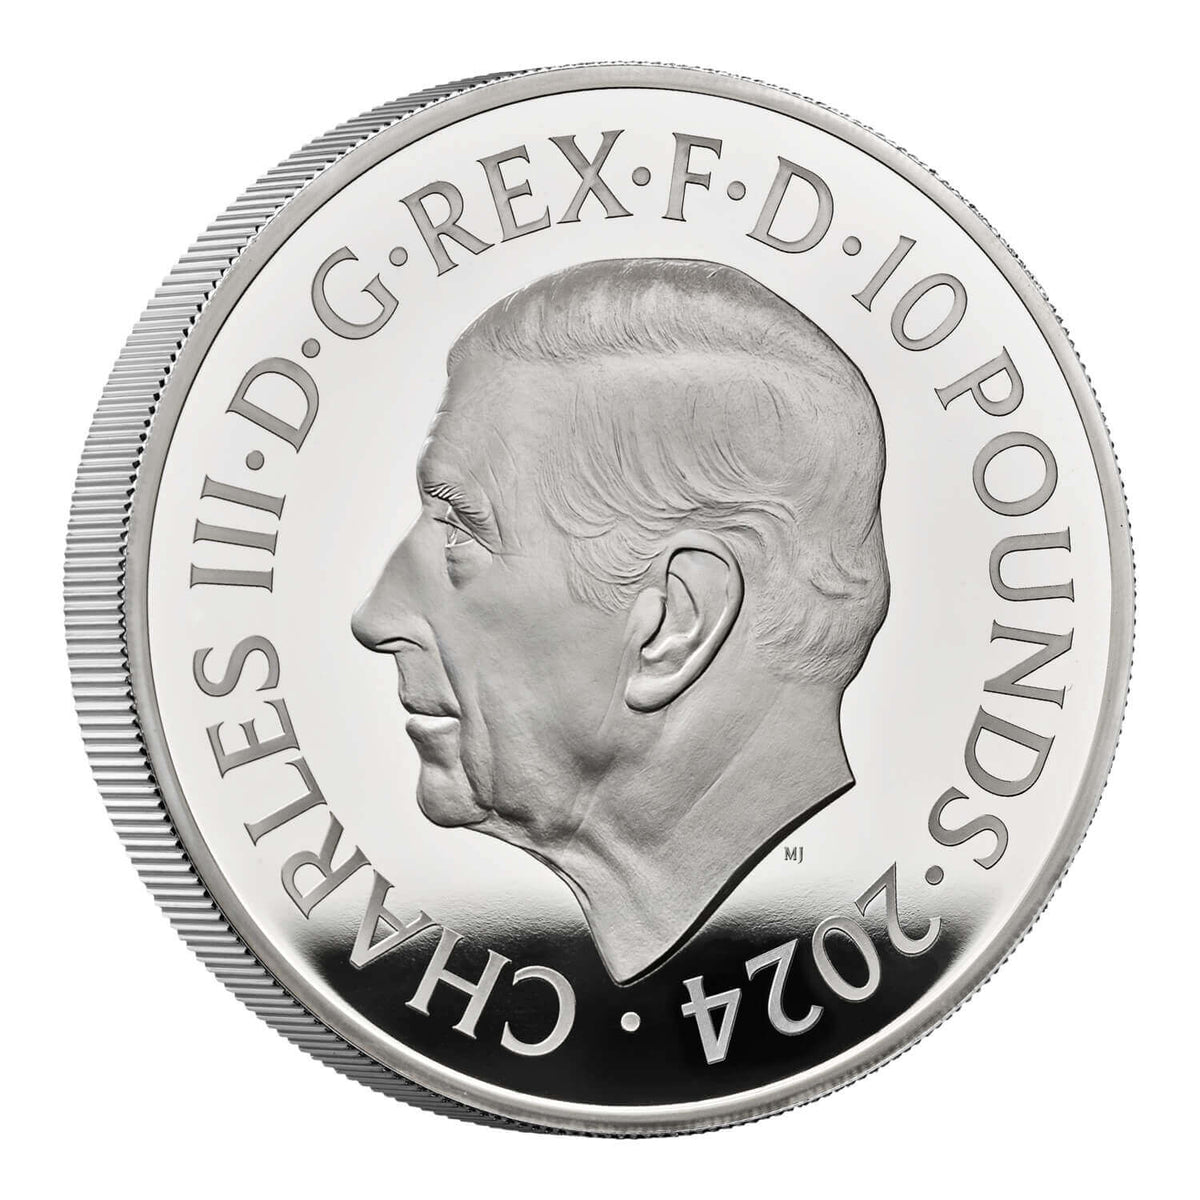 James Bond 5-Pfund-Krone, Stempelglanz-Münze – Ausgabe der 1980er Jahre – von der Royal Mint